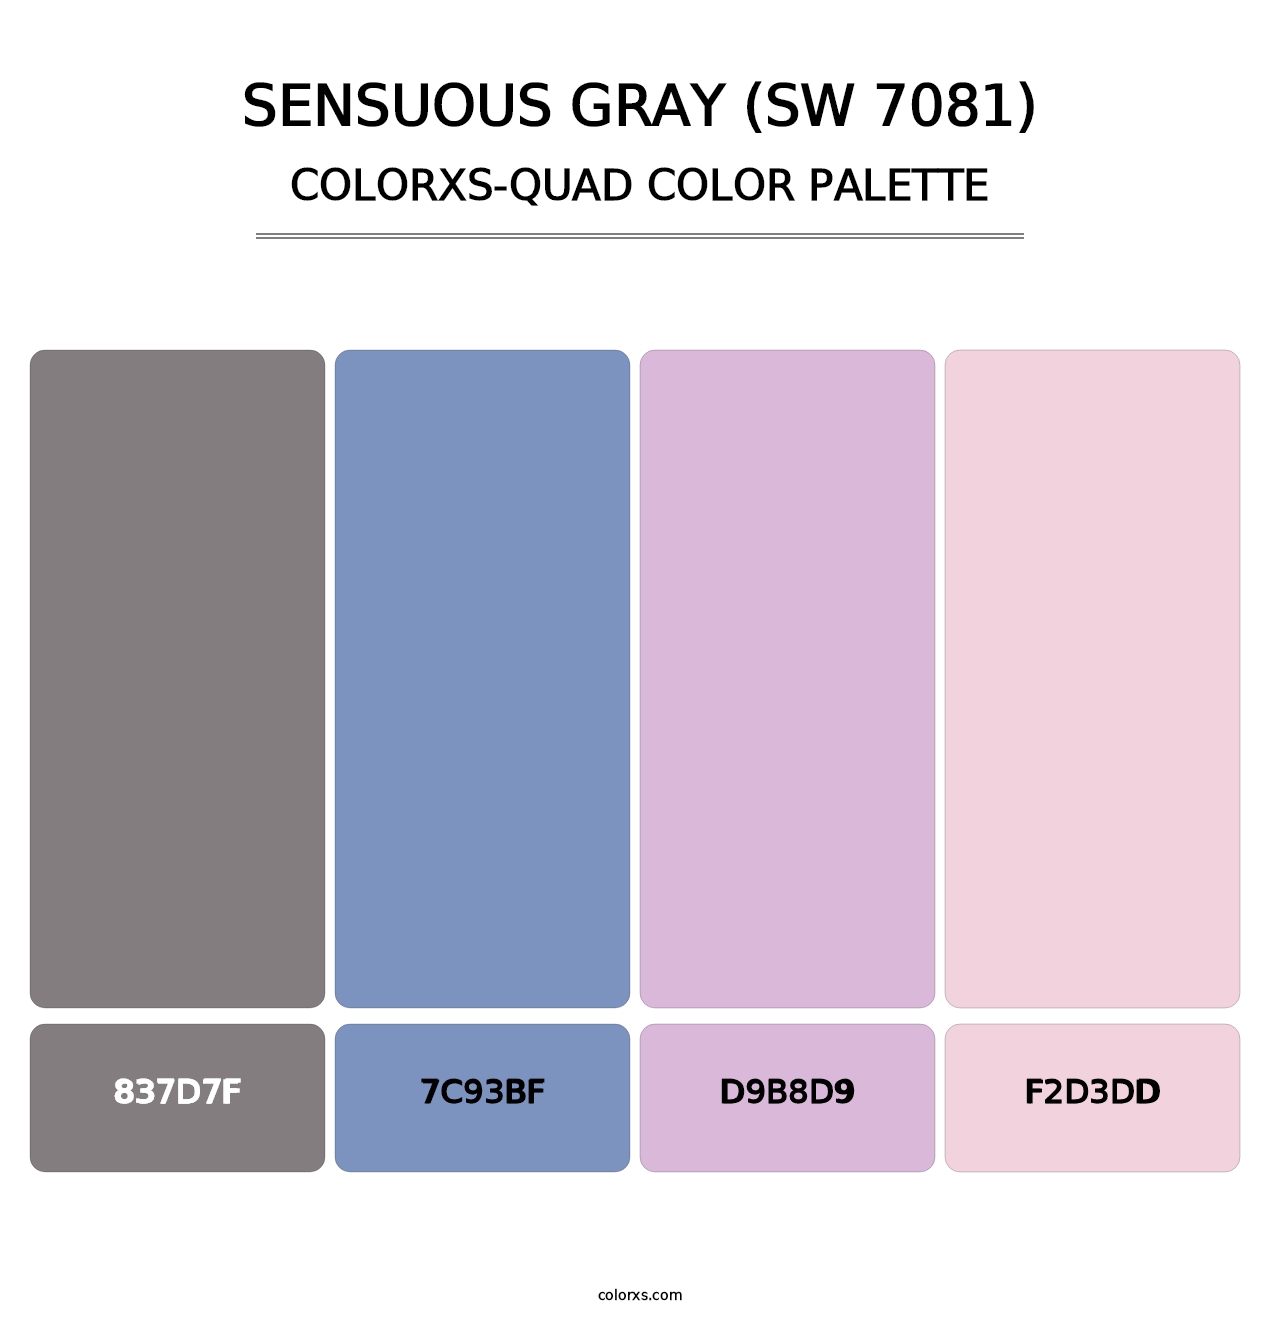 Sensuous Gray (SW 7081) - Colorxs Quad Palette